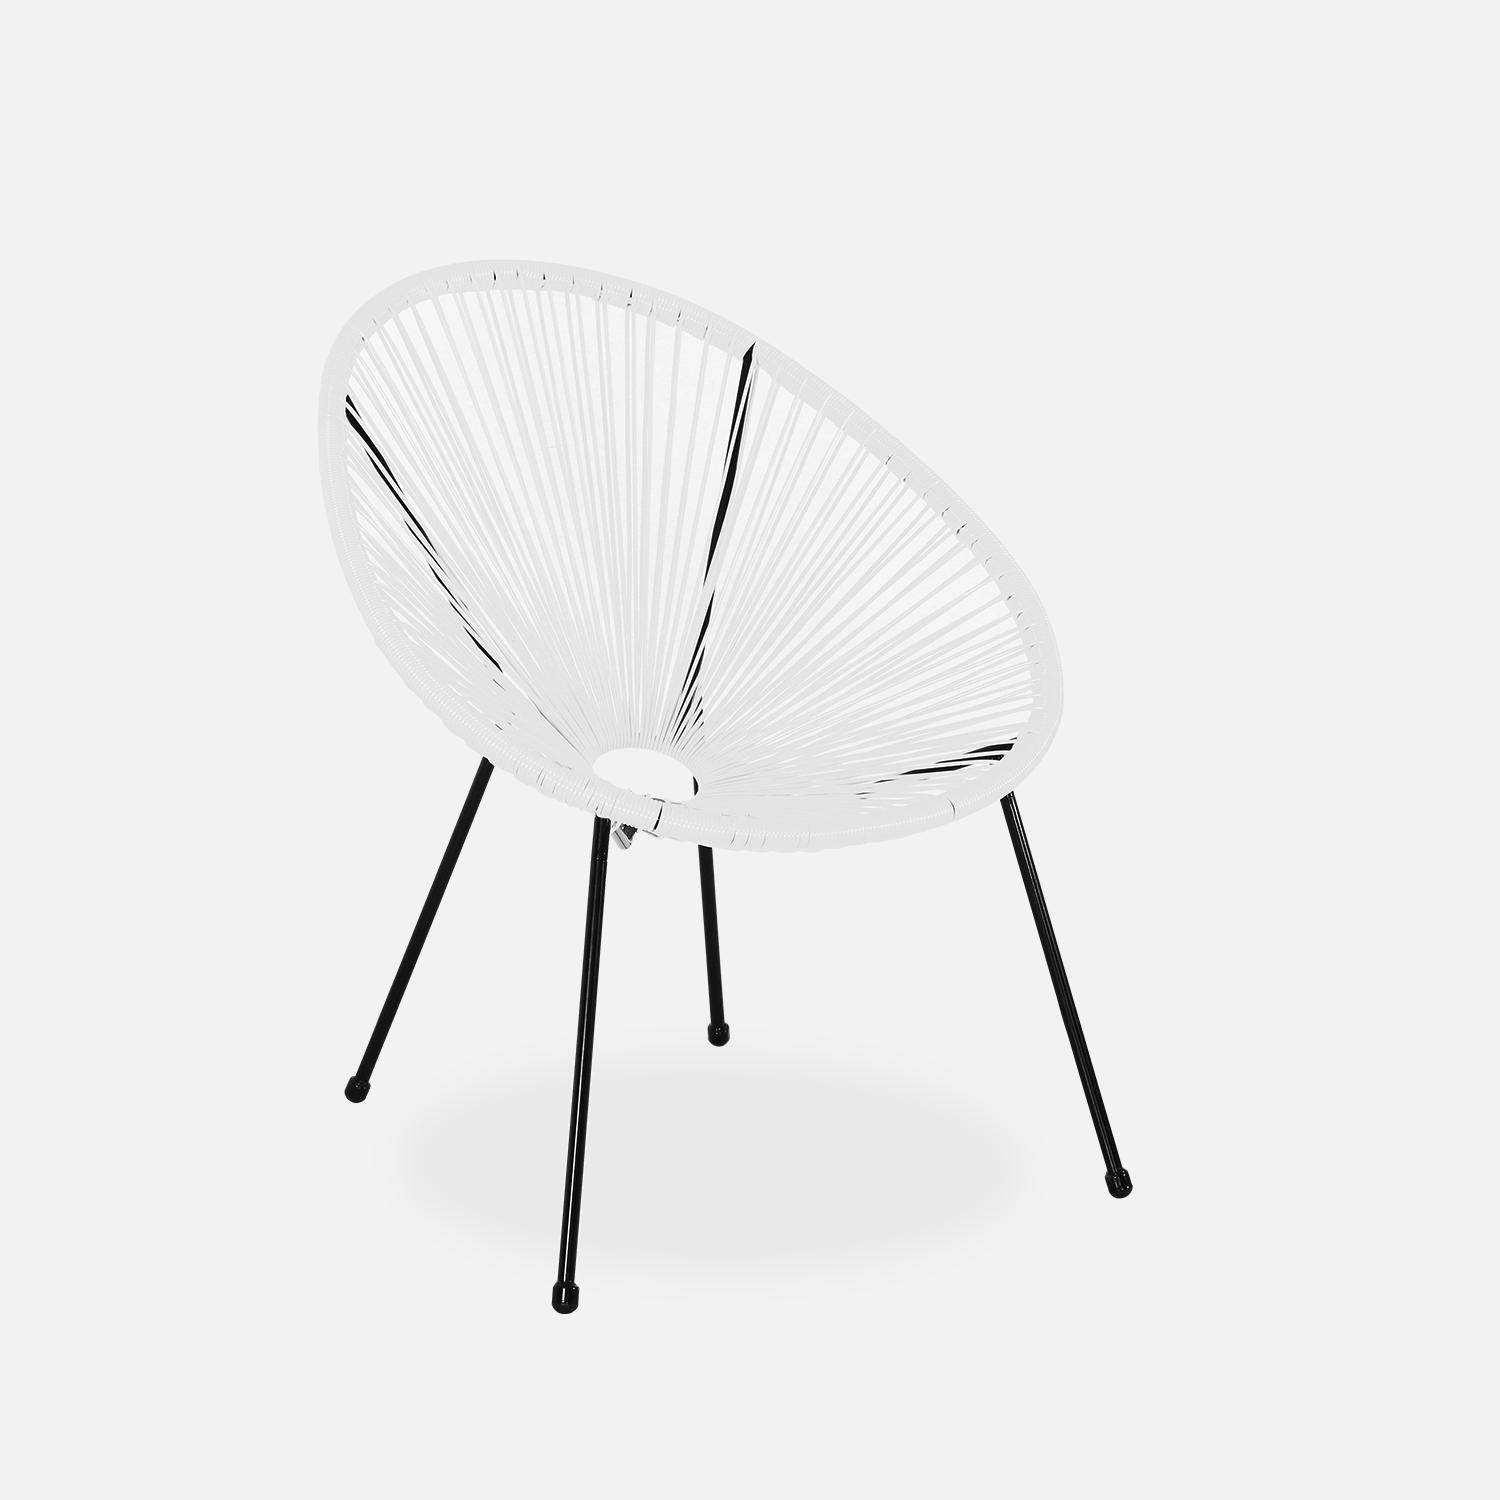 Lot de 2 fauteuils design Oeuf - Acapulco blanc- Fauteuils 4 pieds design rétro, cordage plastique, intérieur / extérieur Photo3